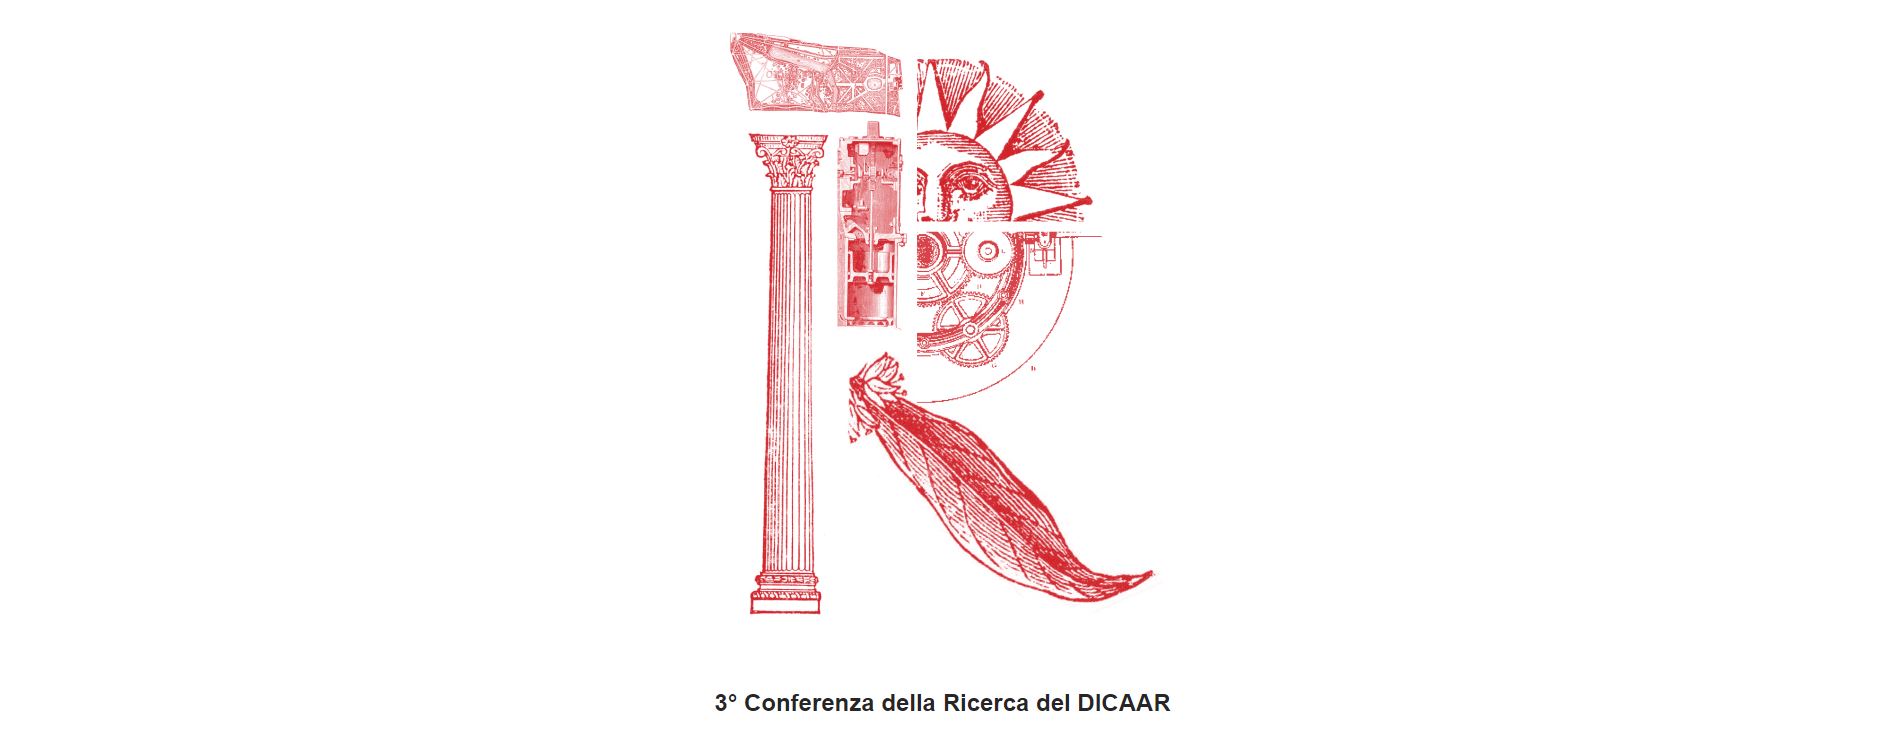 “Il futuro sostenibile della mobilità”, 3° Conferenza della Ricerca DICAAR, 17 dicembre